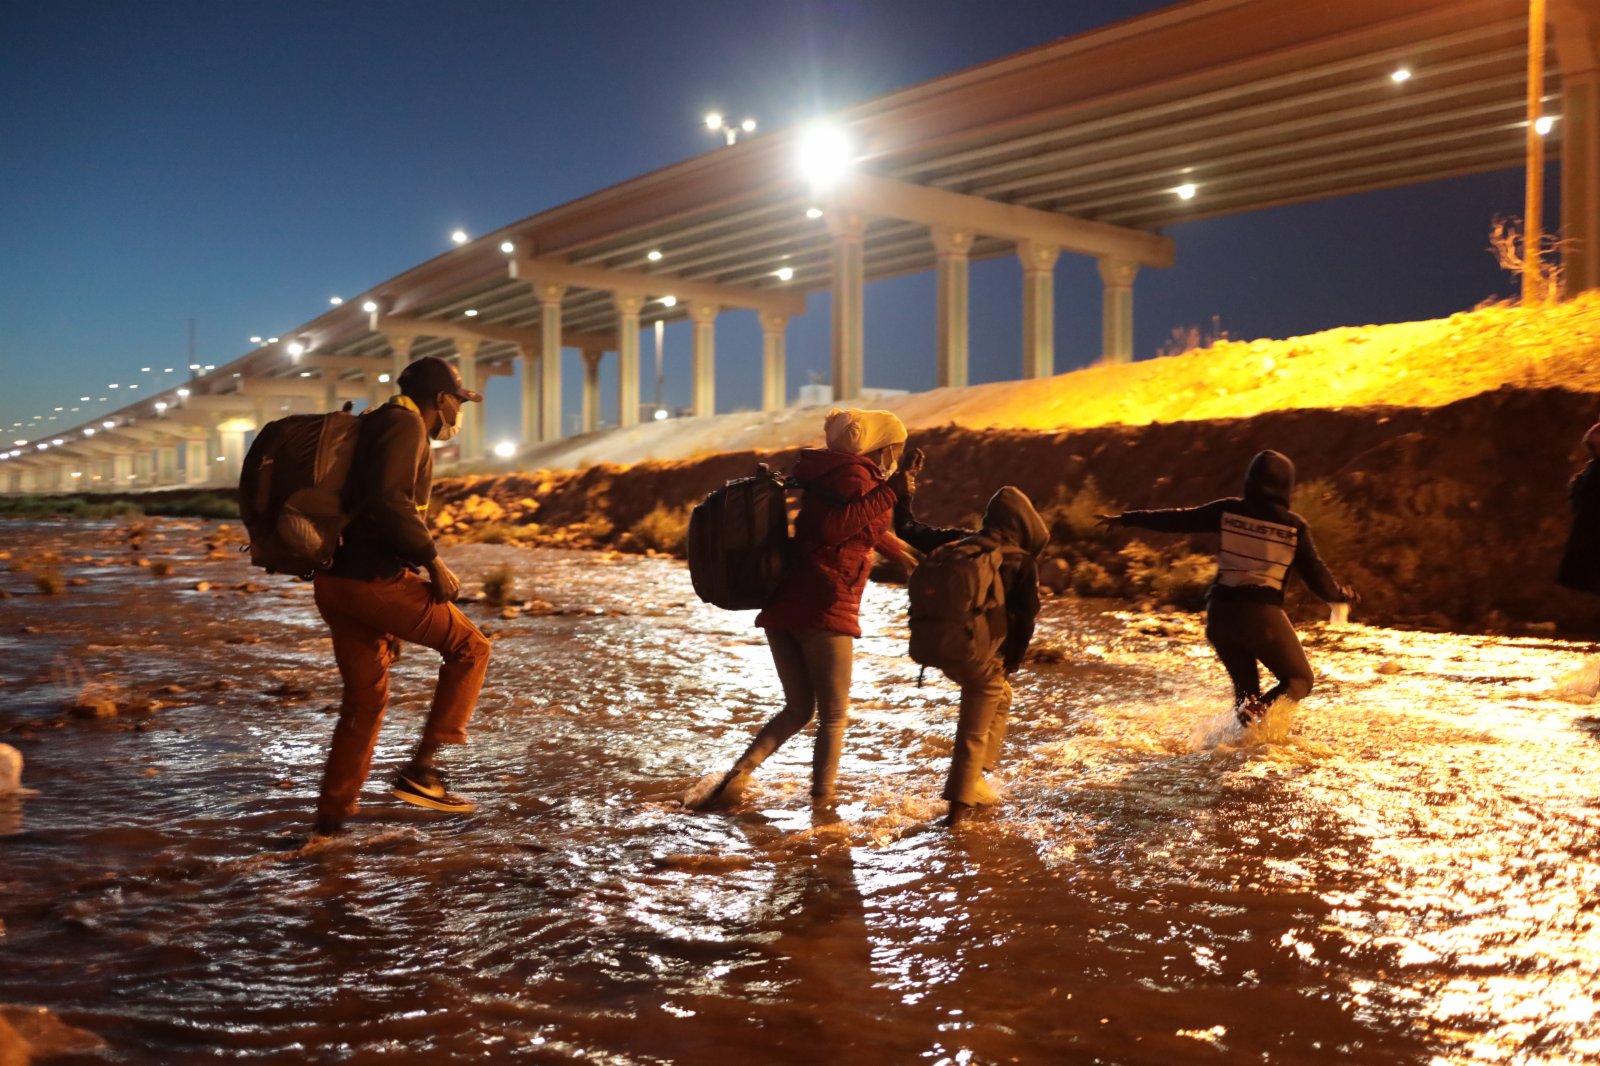 這是3月30日在墨西哥邊境城市華雷斯一側拍攝的海地移民穿過布拉沃河從墨西哥試圖進入美國的資料照片。